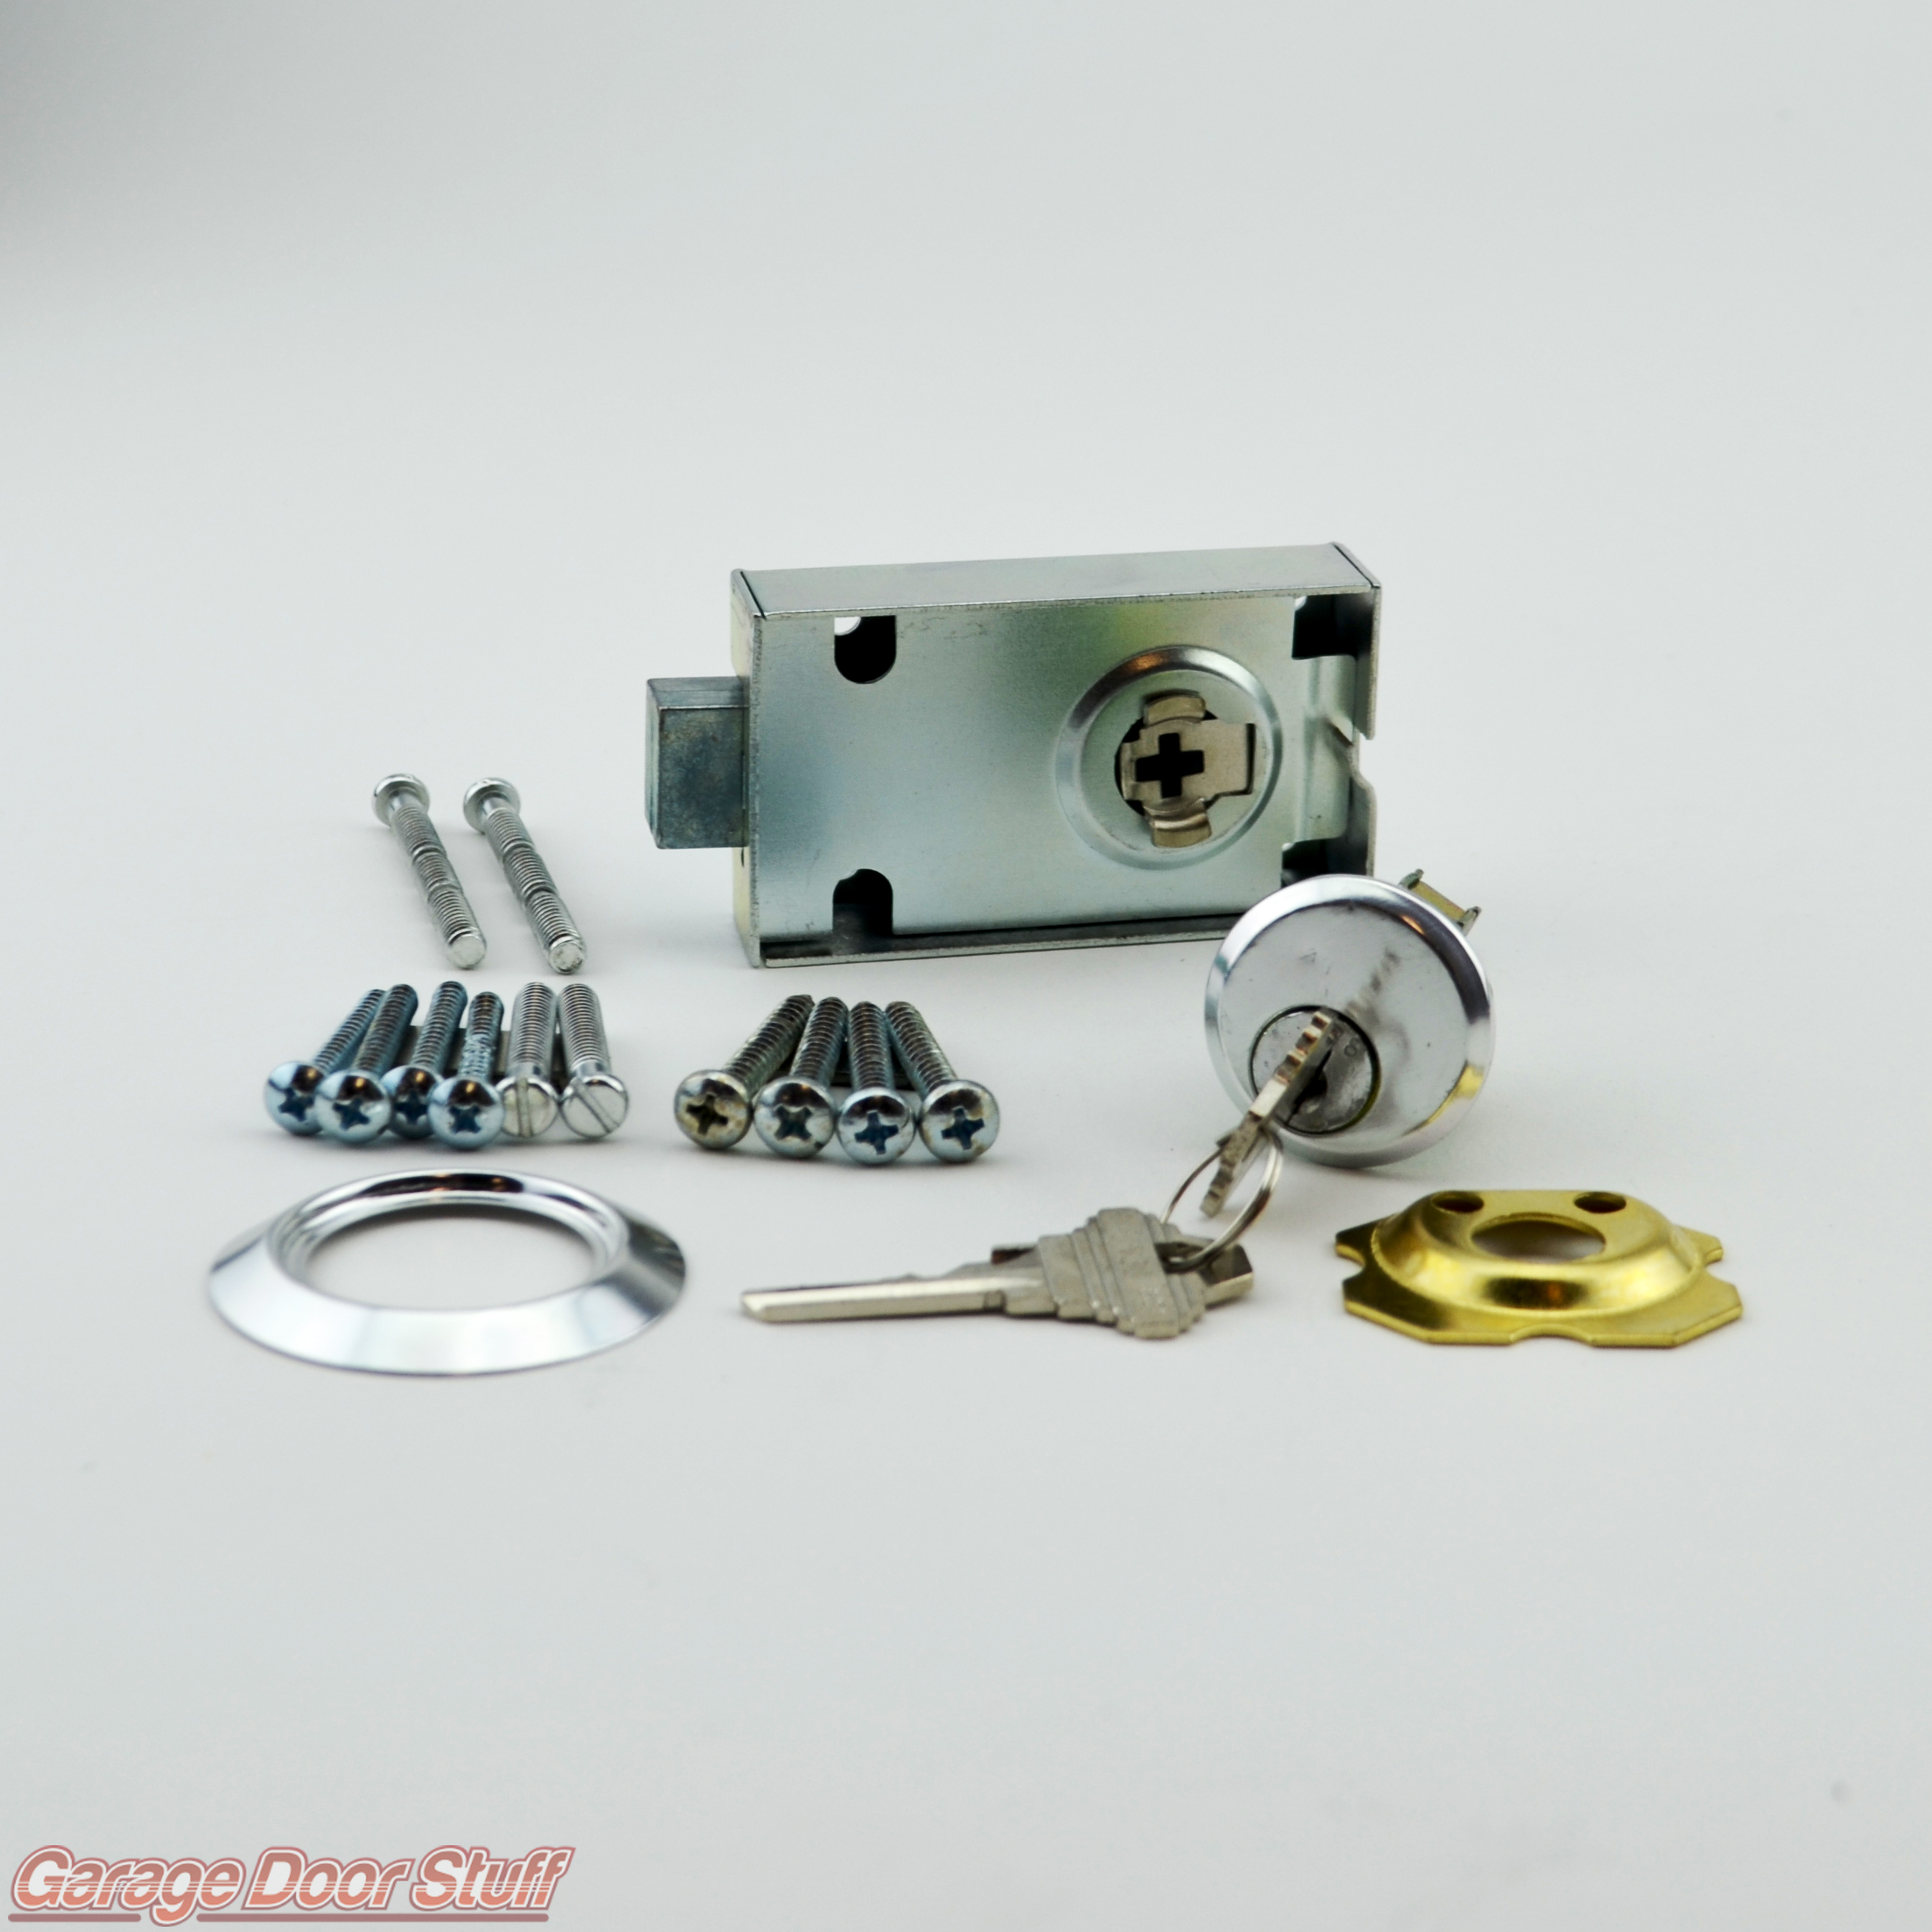 Garage Door Lock, Building Hardware Garage Door Lock Cylinder T Handle Kit